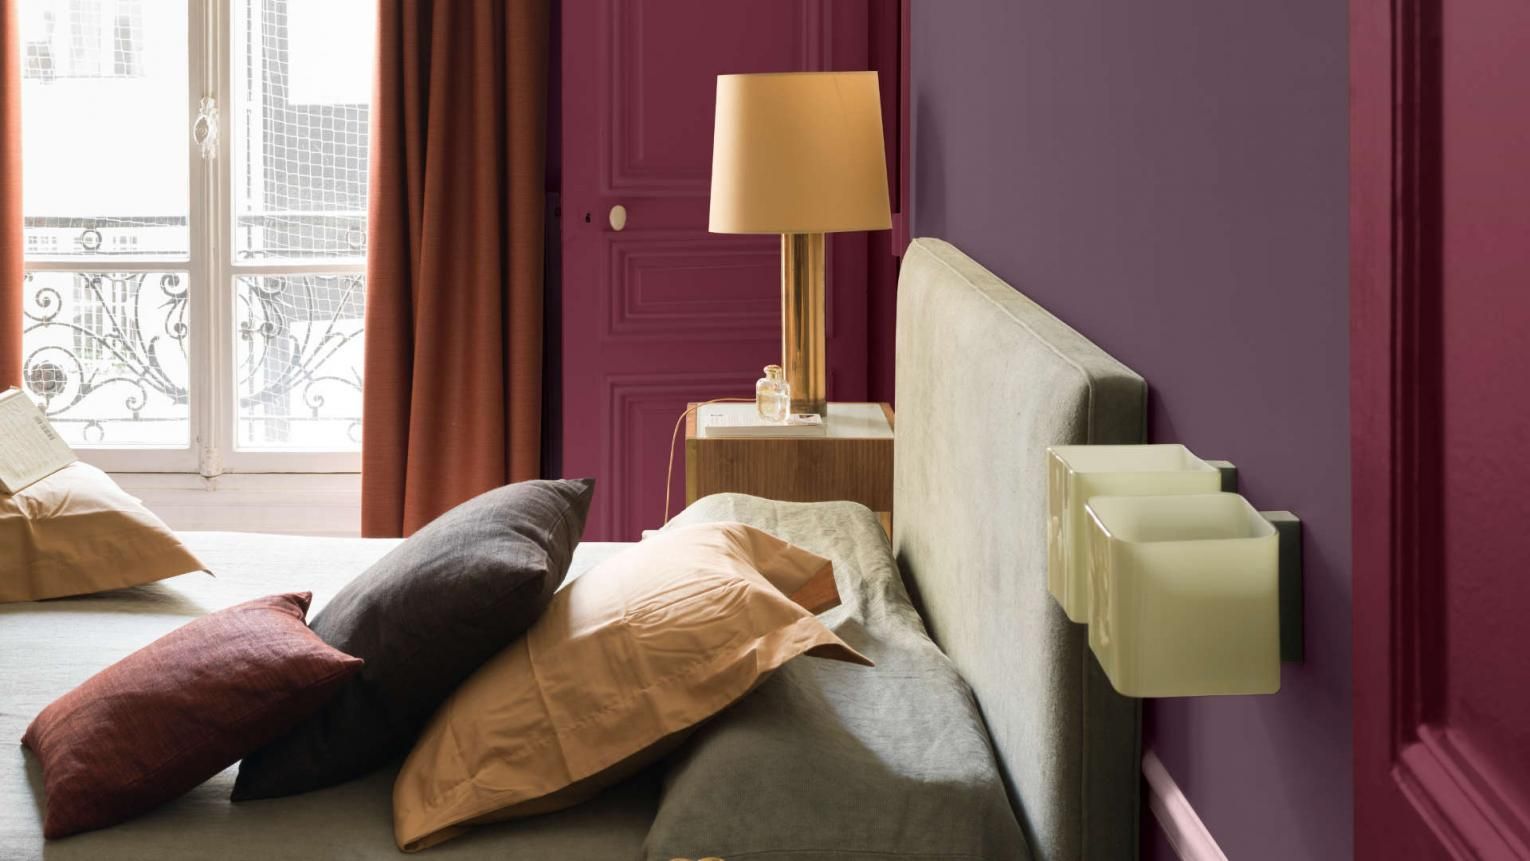 fioletowa sypialnia dulux 13 pomyslow sypialnia kolory aranzacje inspiracje zdjecia dekoportal